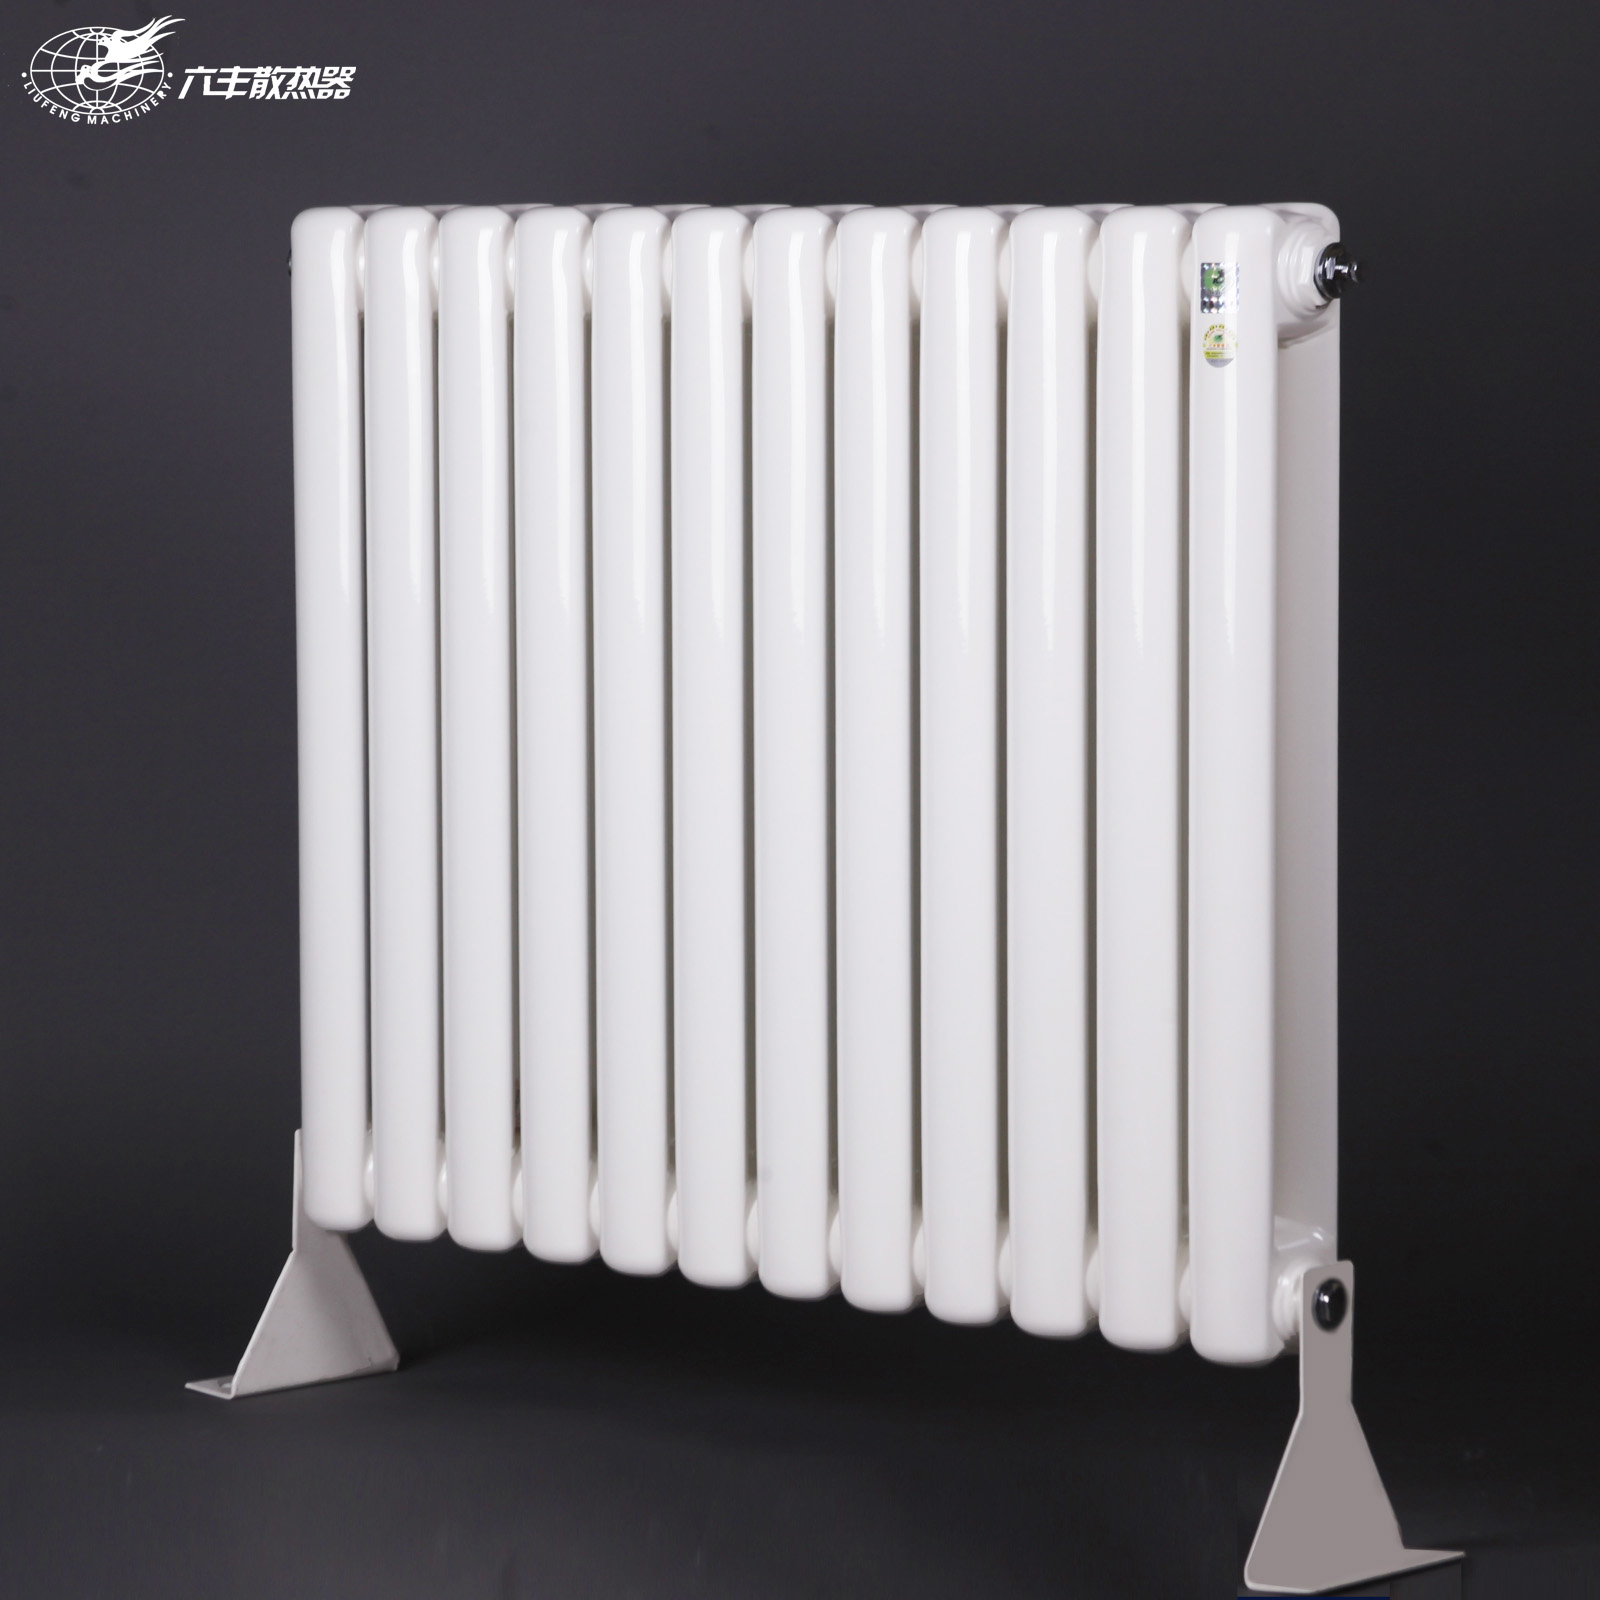 铜铝复合暖气片是现代家庭常用的一种新型散热器